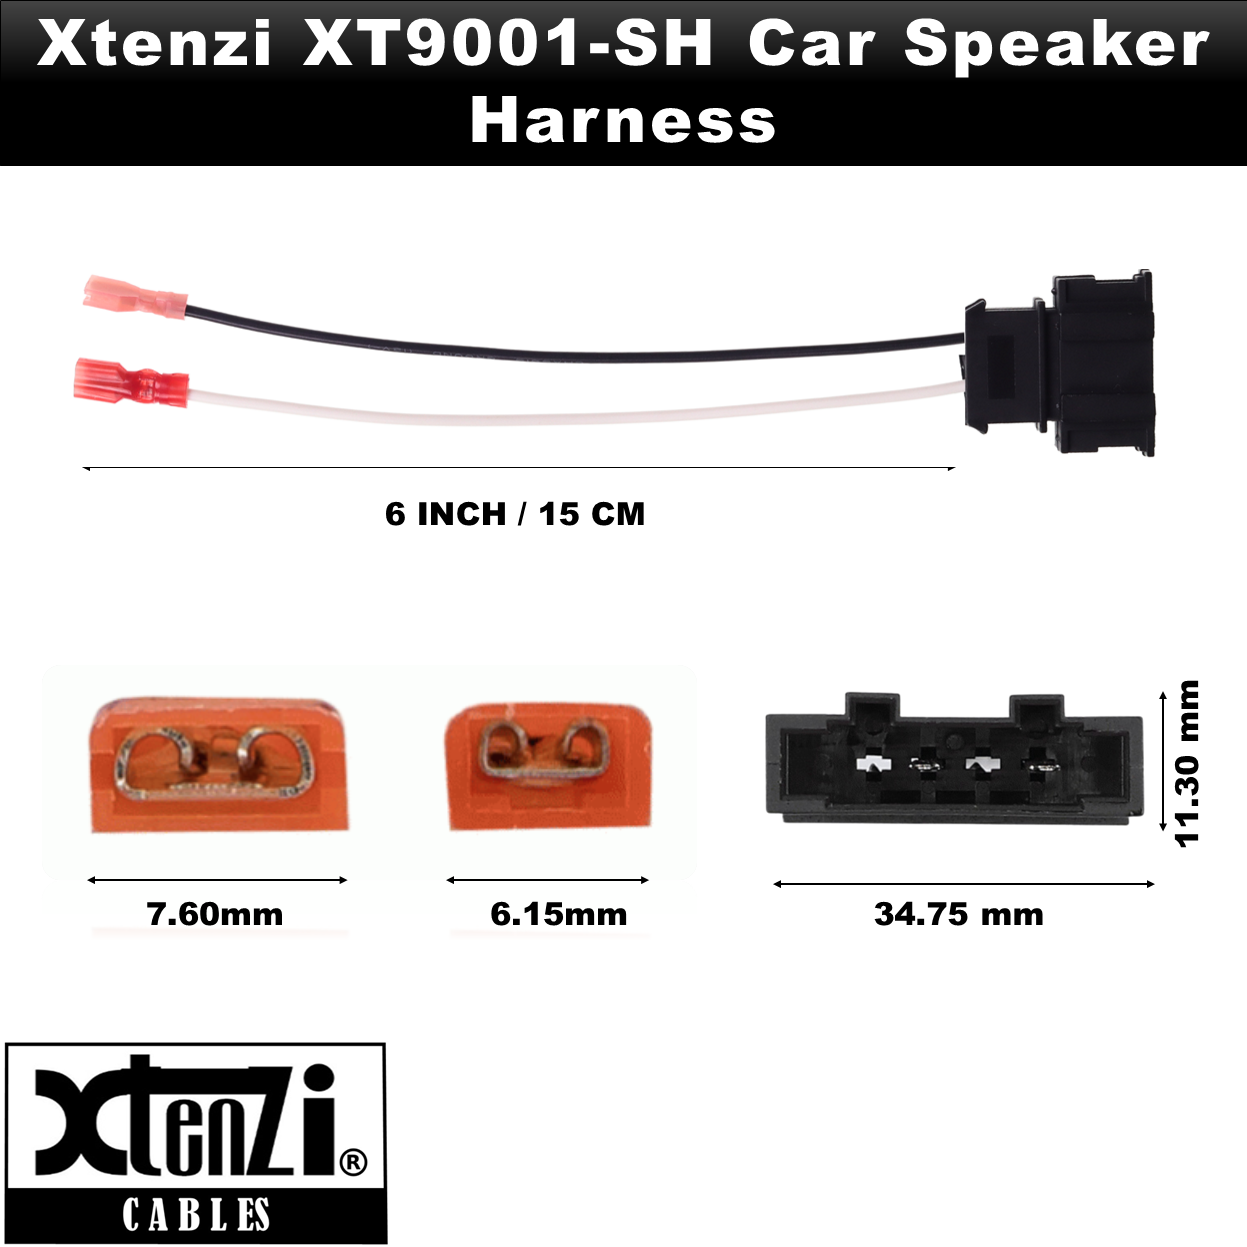 Xtenzi 2 Pair Car Audio Speaker Harness Set for Volkswagen, Porsche Vehicles